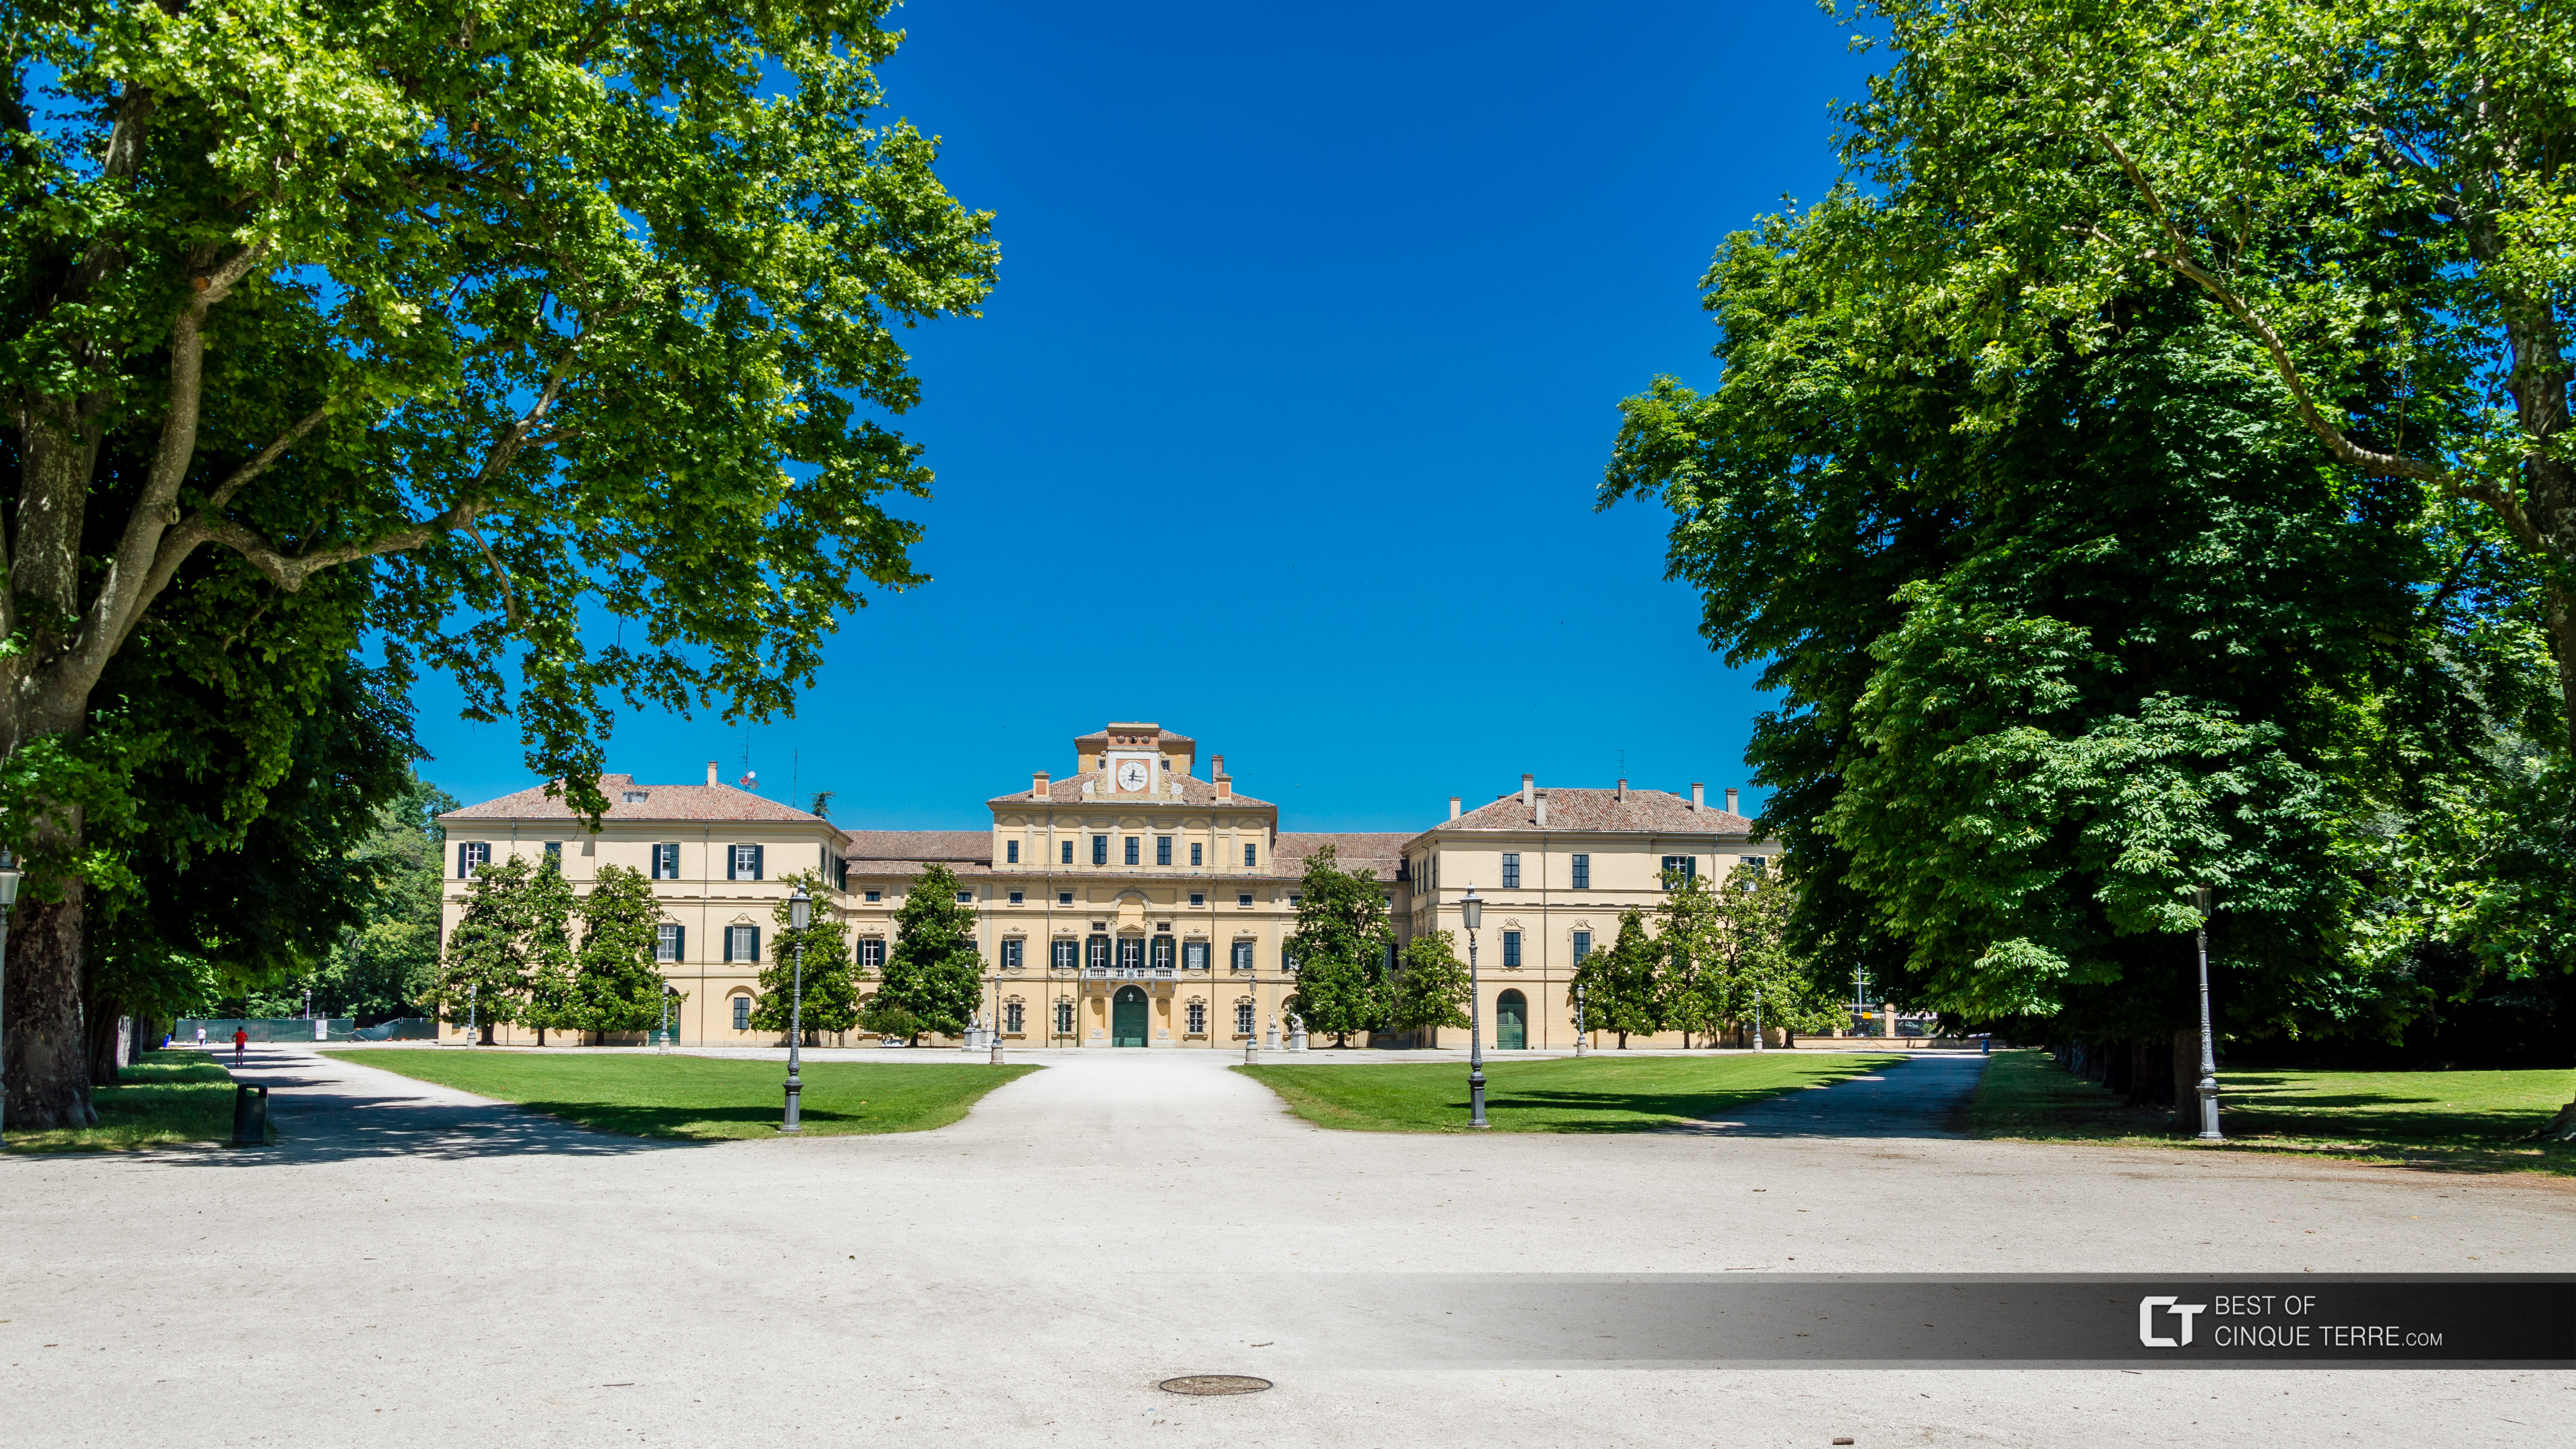 Der Dogenpalast im Park Ducale, Parma, Italien